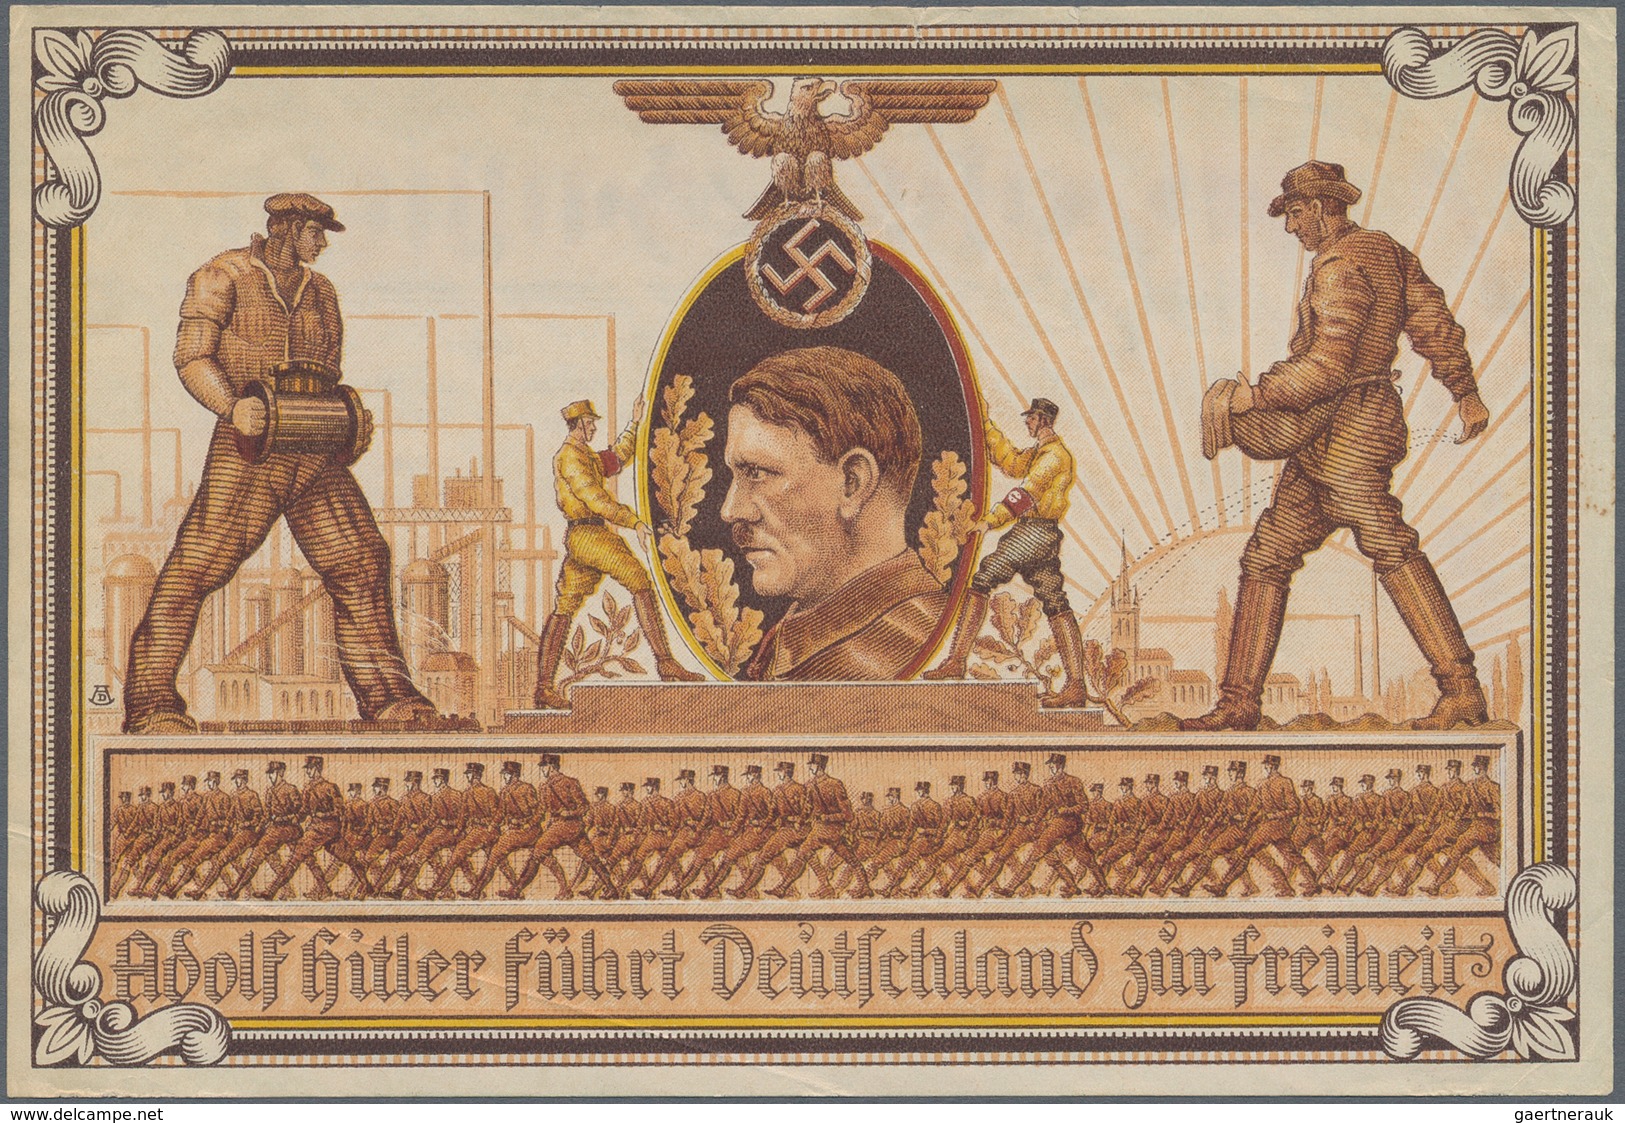 Ansichtskarten: Propaganda: 1932, "Hitler-Baustein", Baustein-Schein 50deutsche Reichspfennige, Beid - Politieke Partijen & Verkiezingen